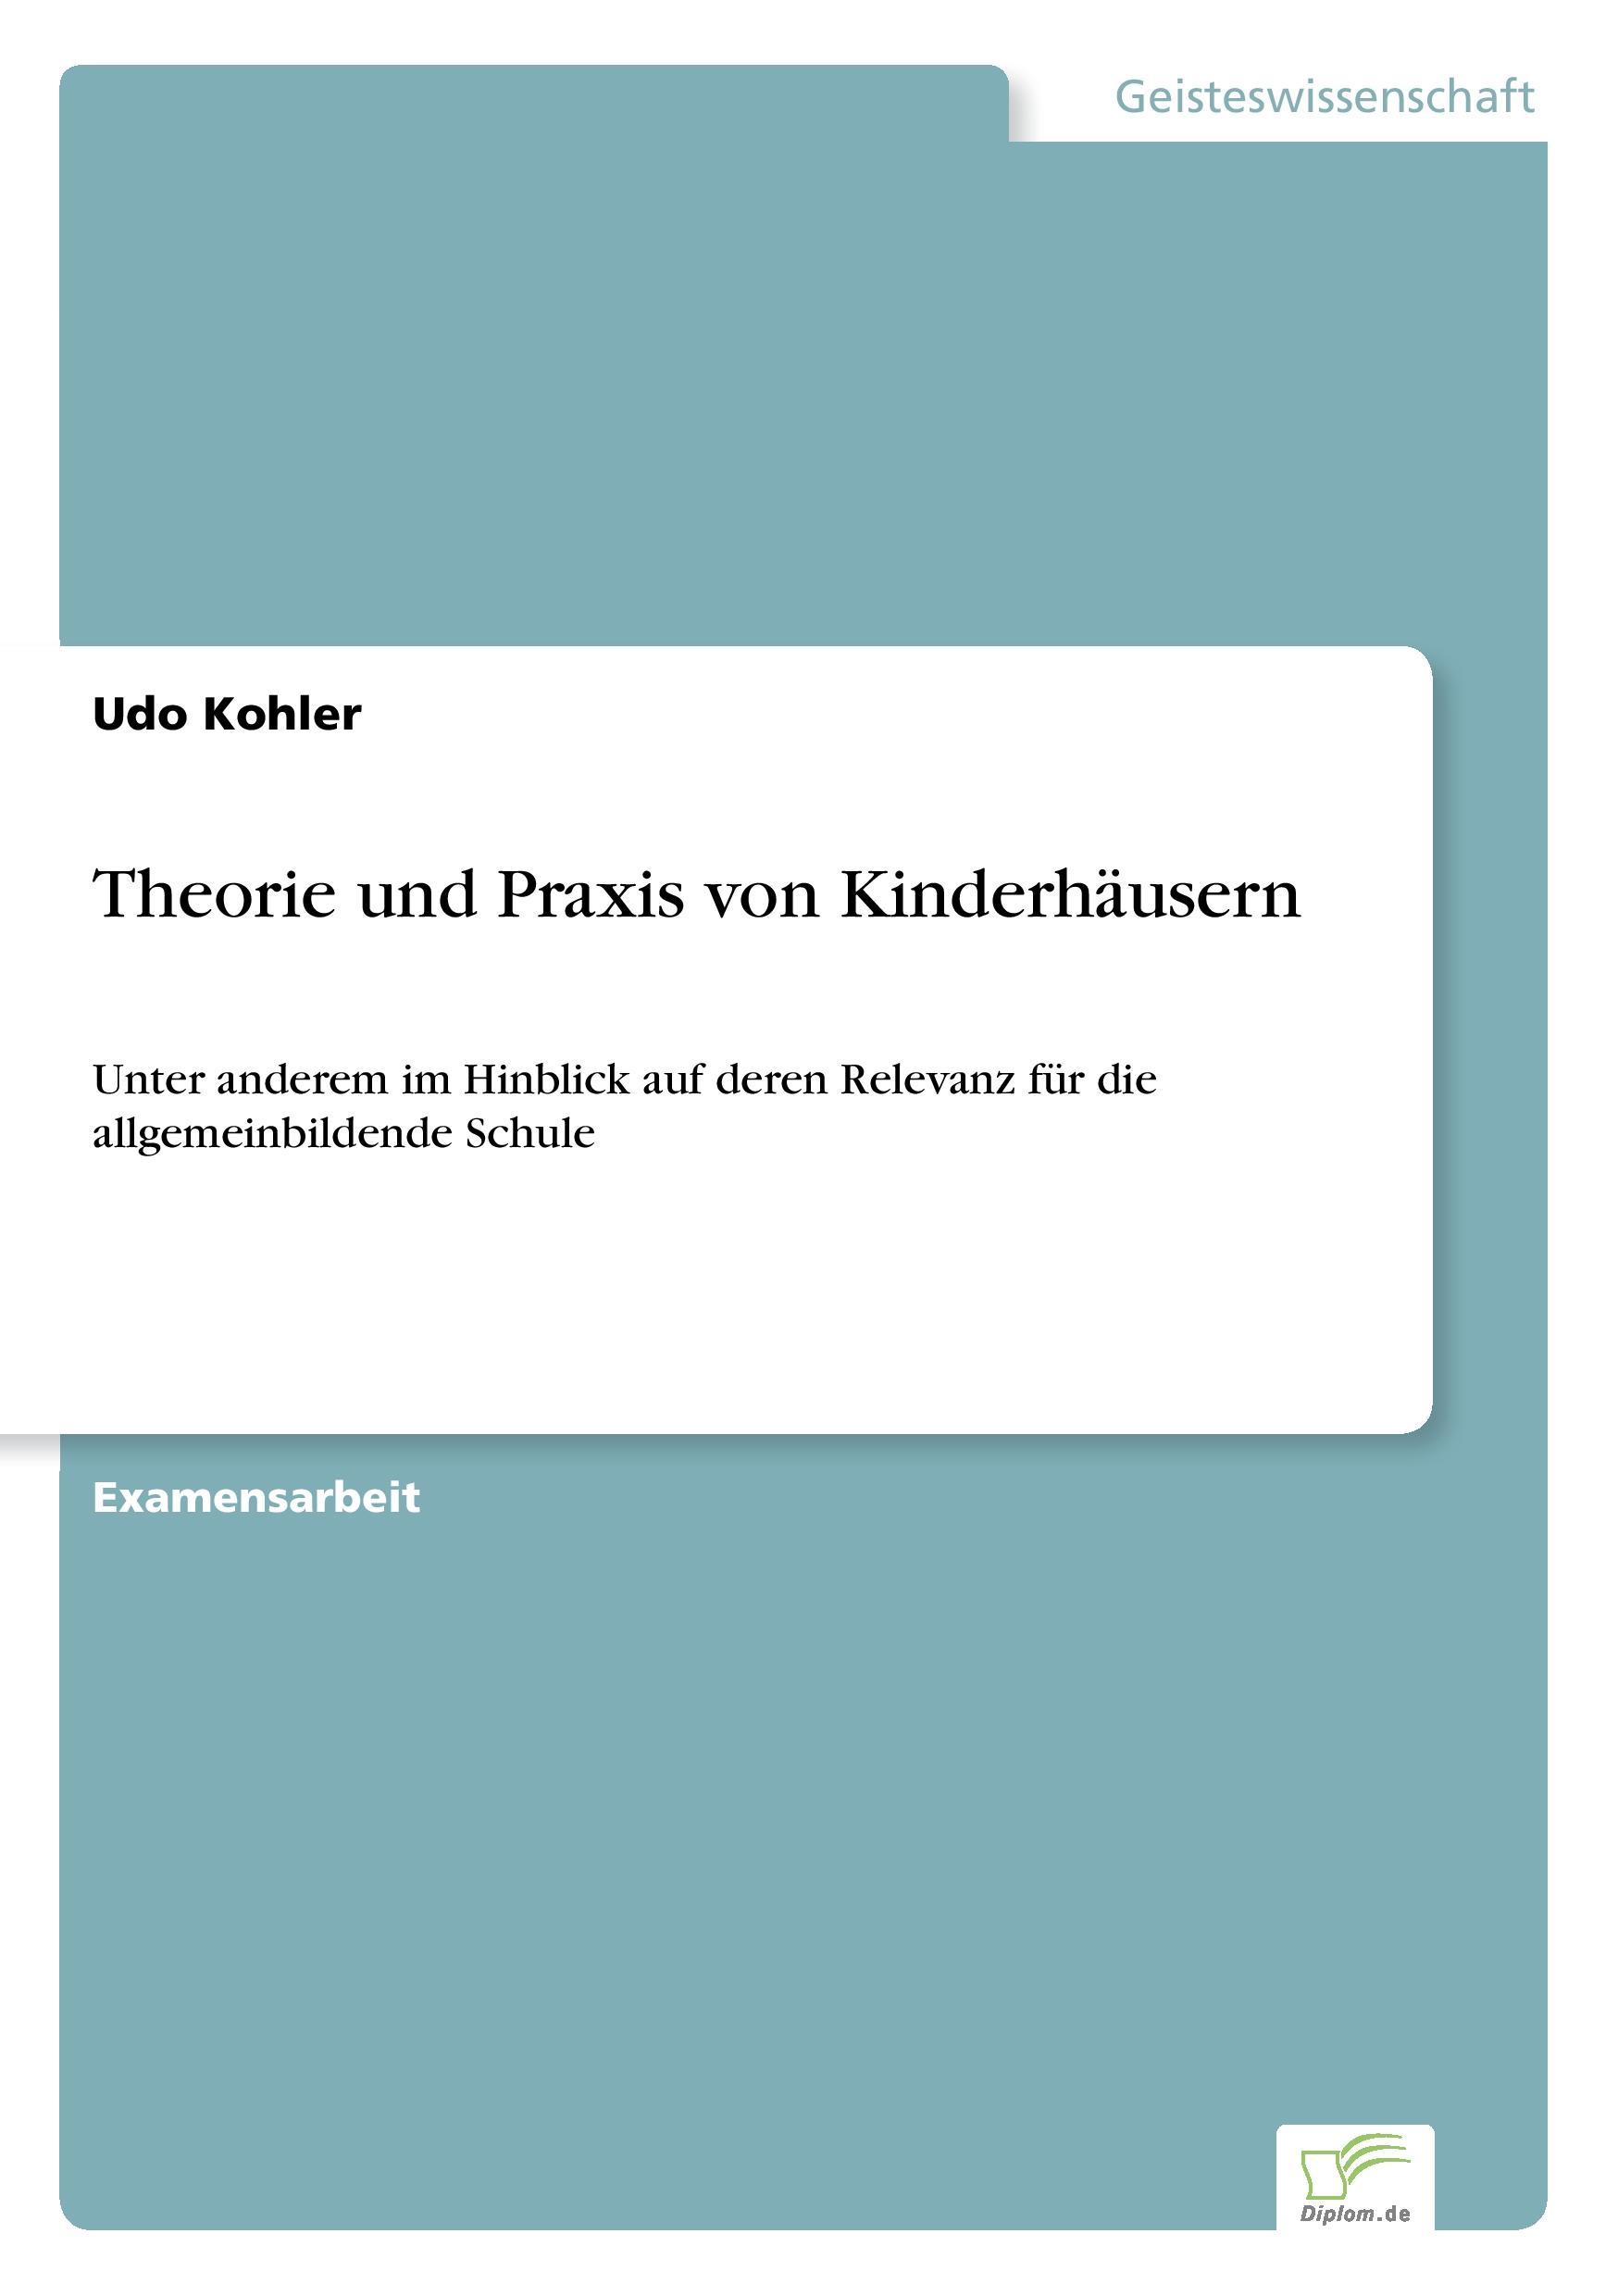 Theorie und Praxis von Kinderhaeusern - Kohler, Udo